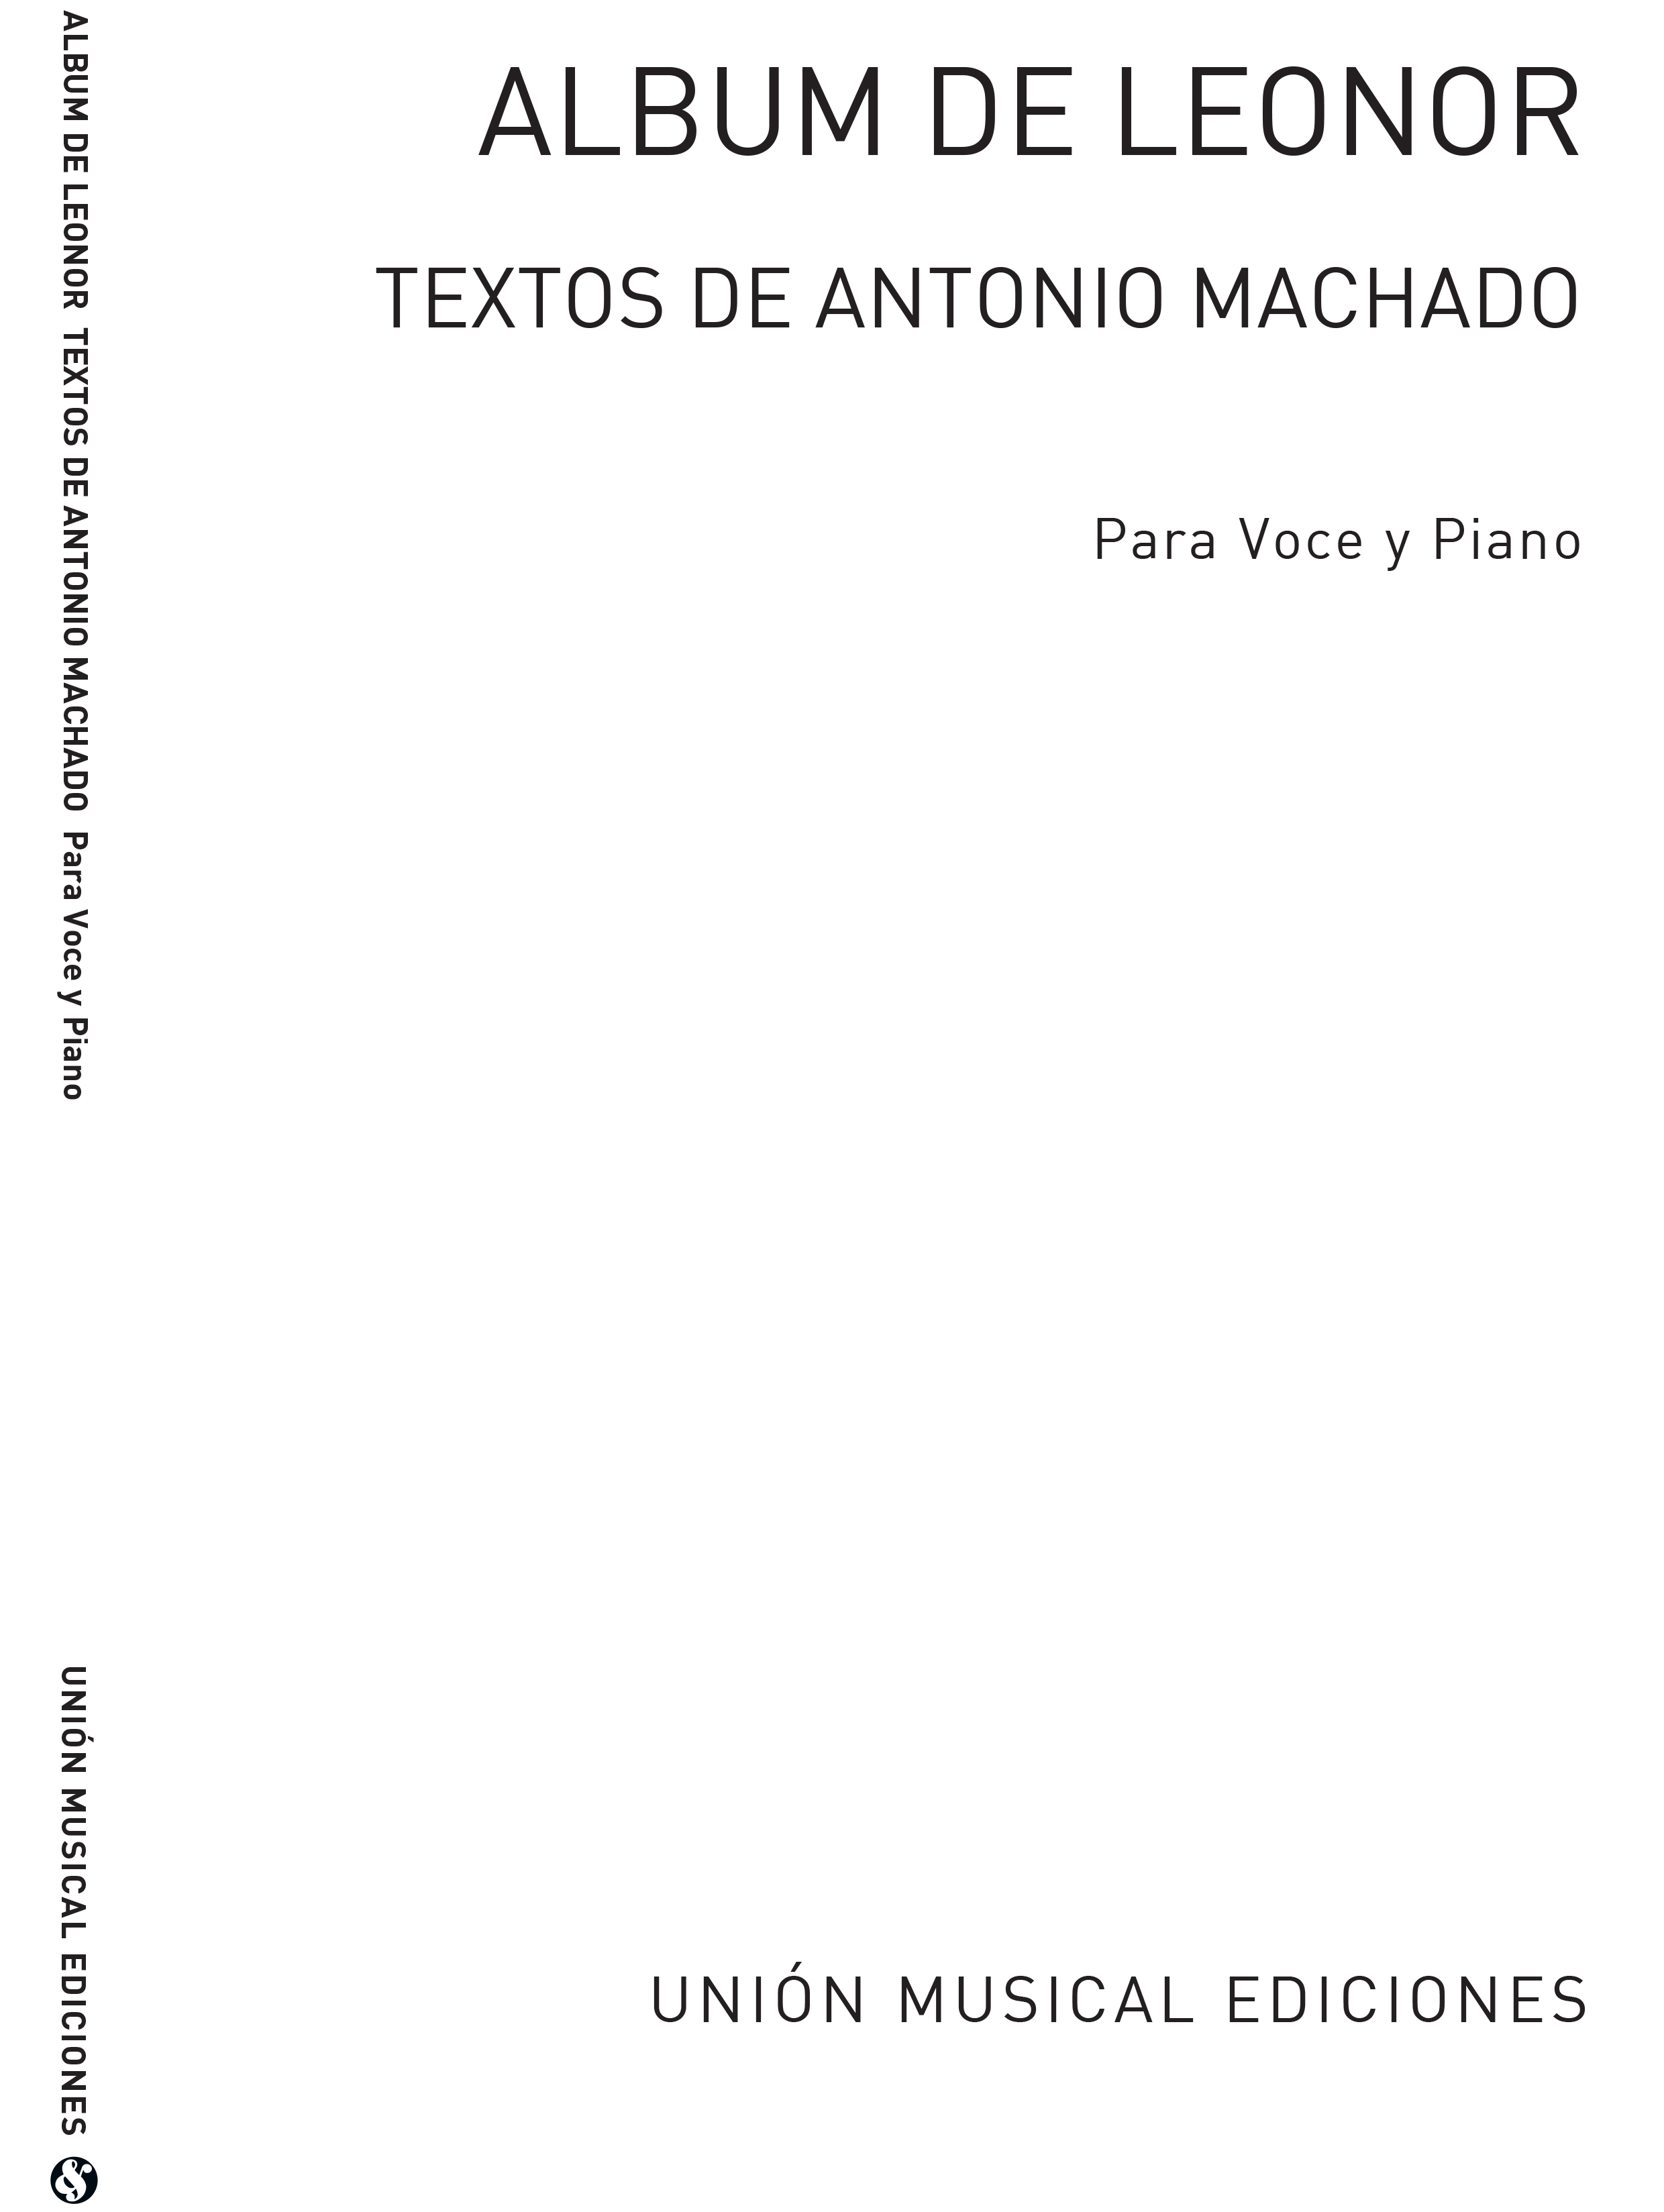 Antonio Machado: Album De Leonor: (Antonio Machado) Voice and Piano: Voice: